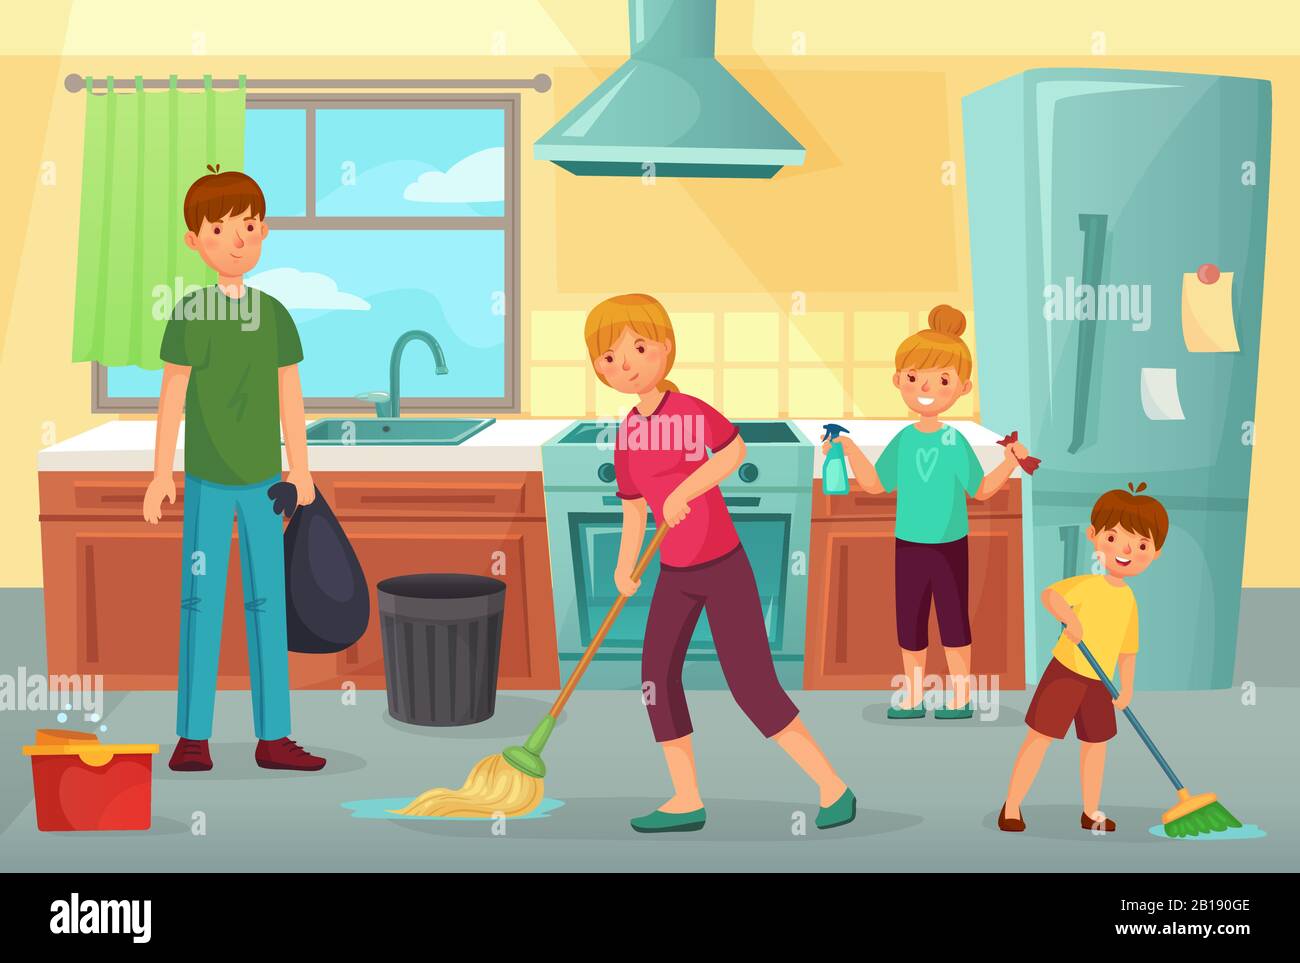 Cuisine familiale. Père, mère et enfants nettoyer la cuisine ensemble le ménage dépoussiérant et essuyage étage dessin vectoriel de dessin animé Illustration de Vecteur